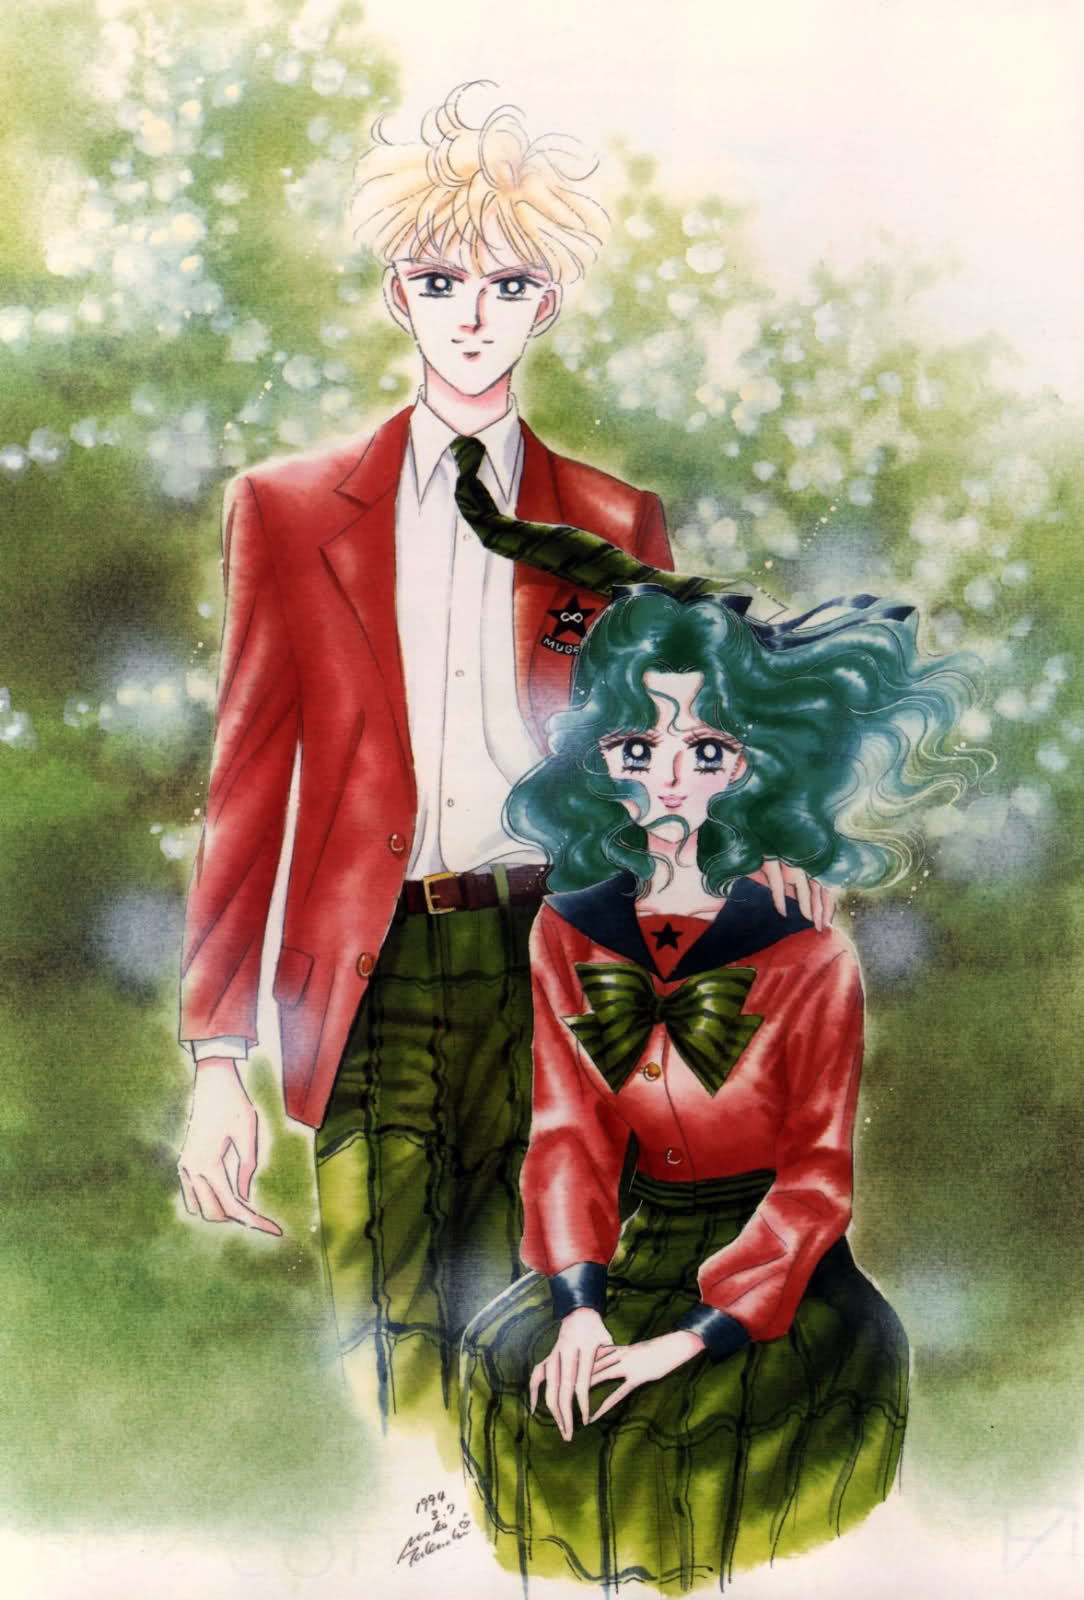 Favorite Sailor Moon Couple(s)? 2qishzk